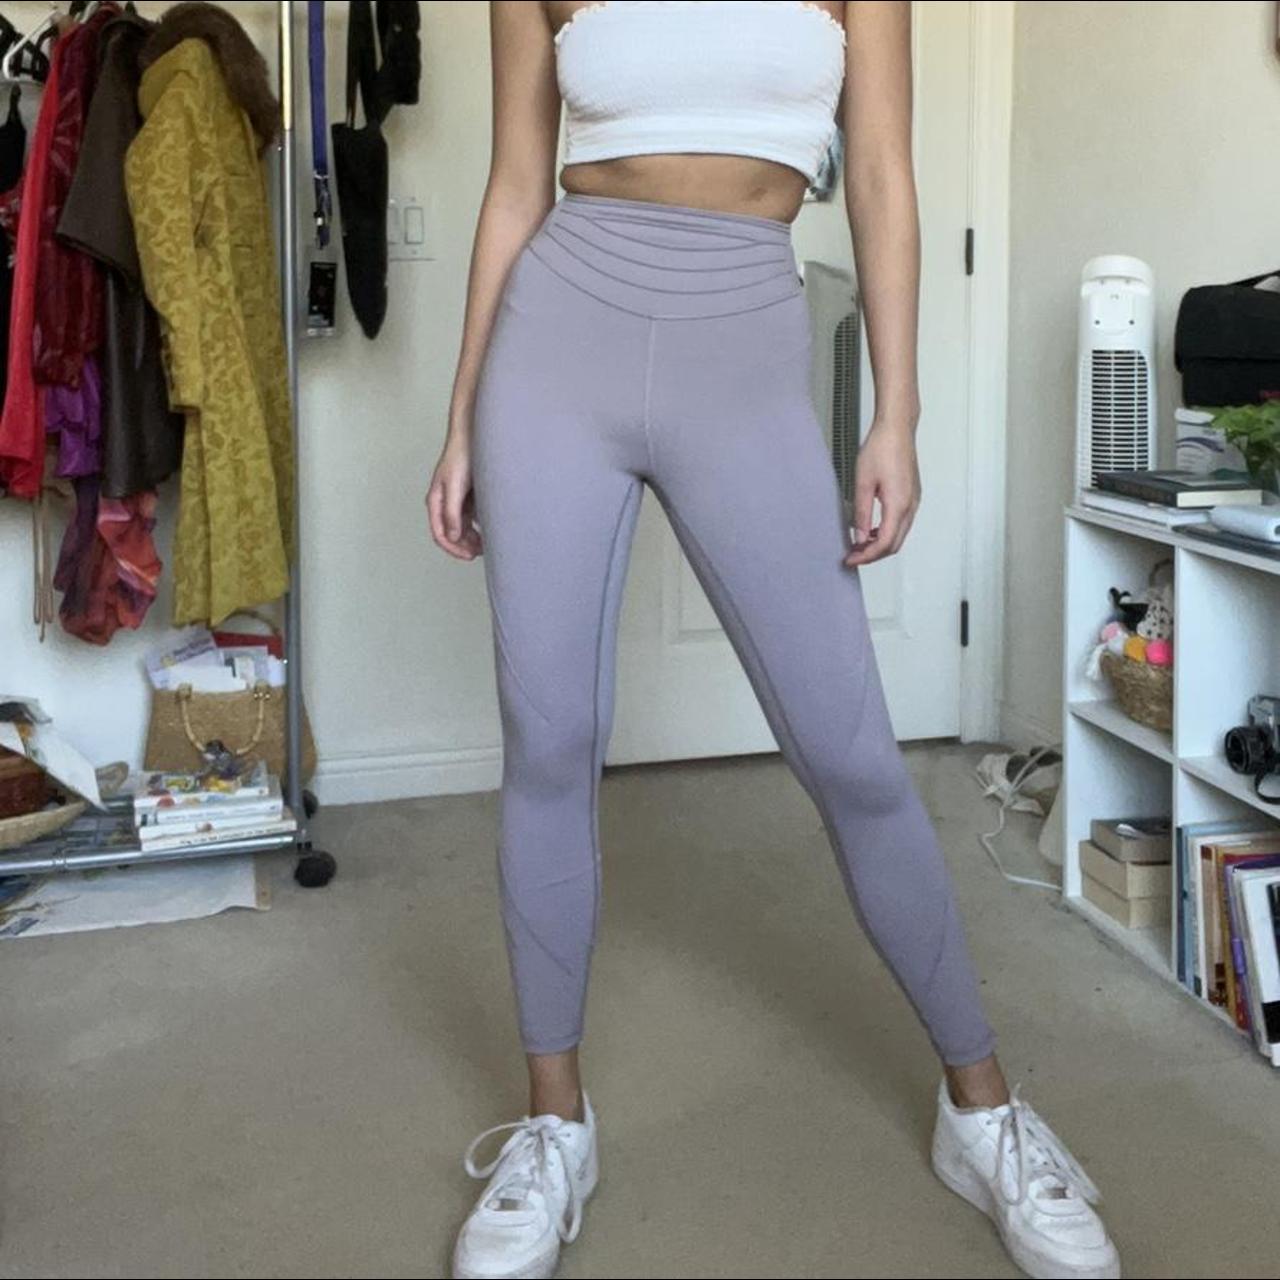 lululemon purple flare leggings size 2 only worn - Depop